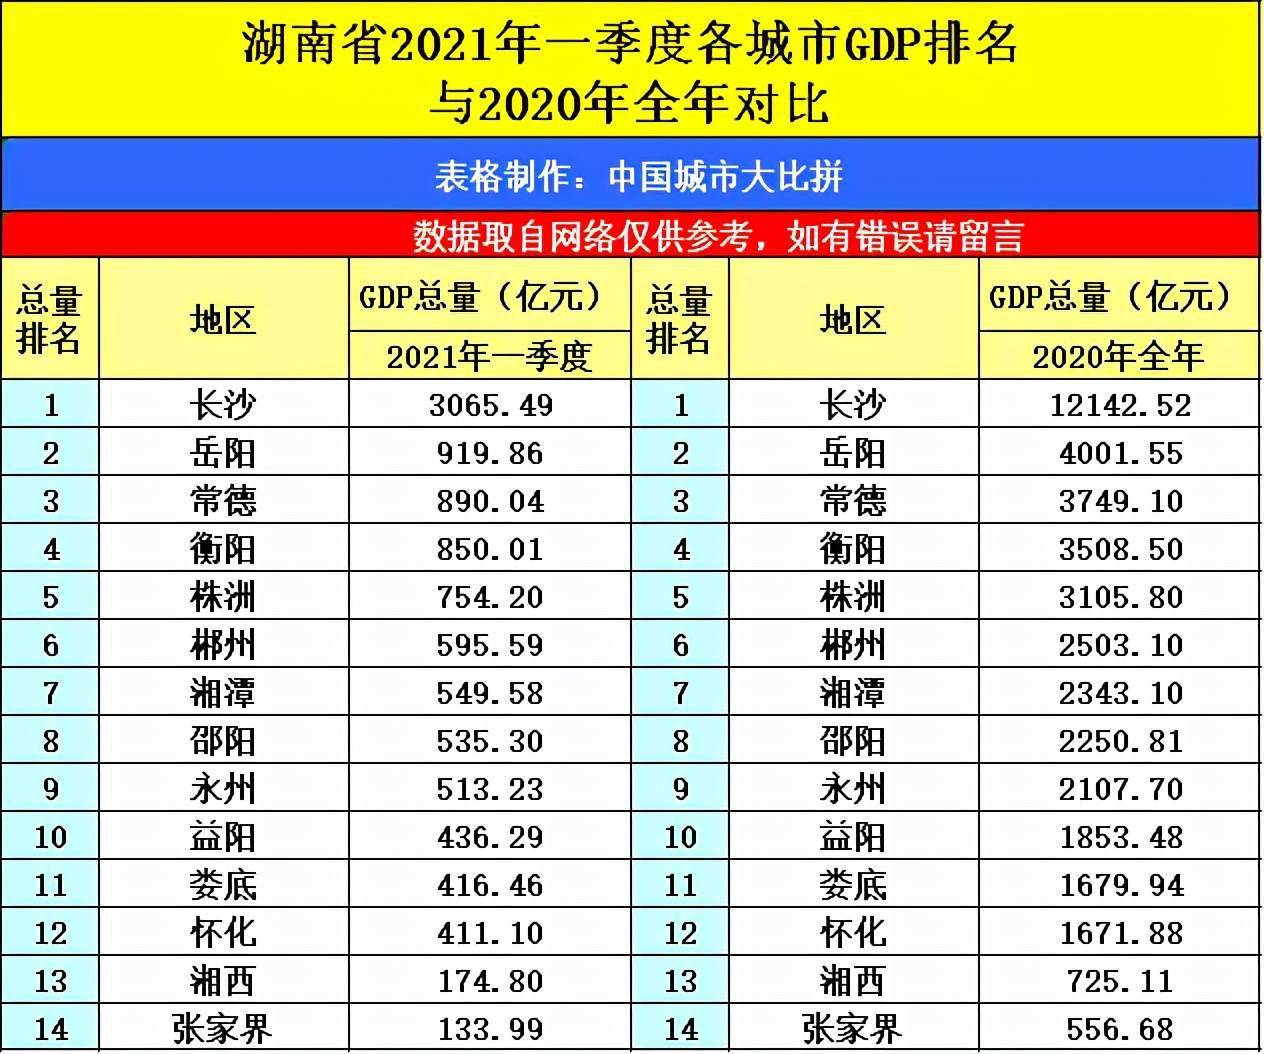 2021年四川总gdp排名_贵州贵阳与四川绵阳的2021年一季度GDP谁更高